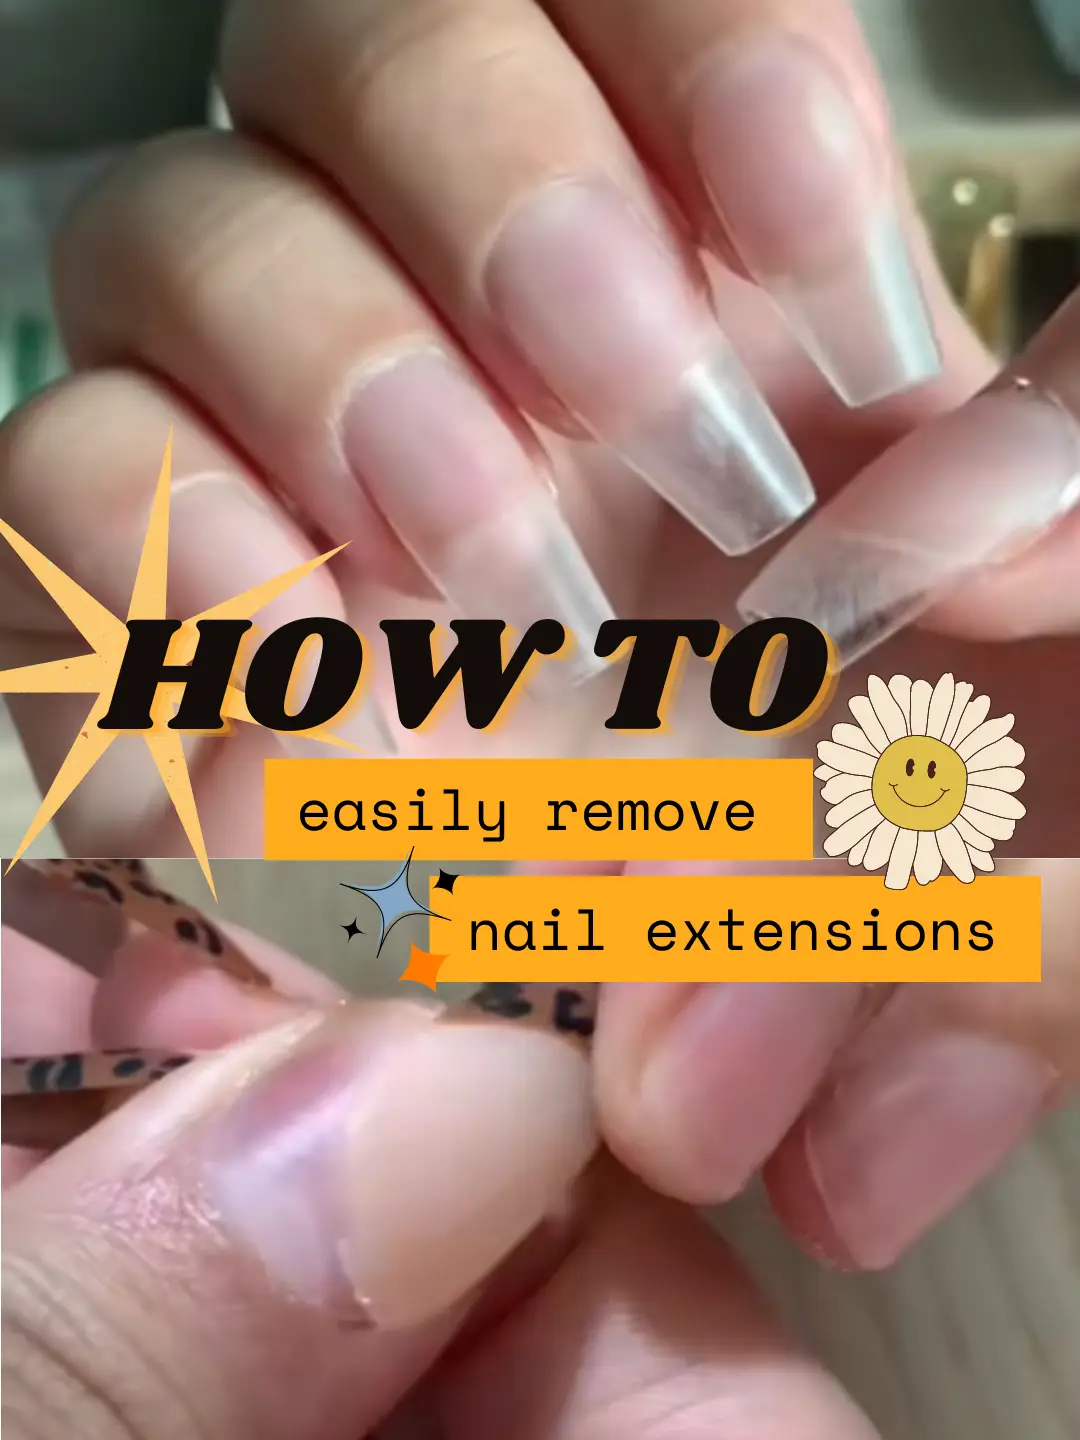 how to easily remove nail extensions 💜 | Galeri disiarkan oleh farah |  Lemon8